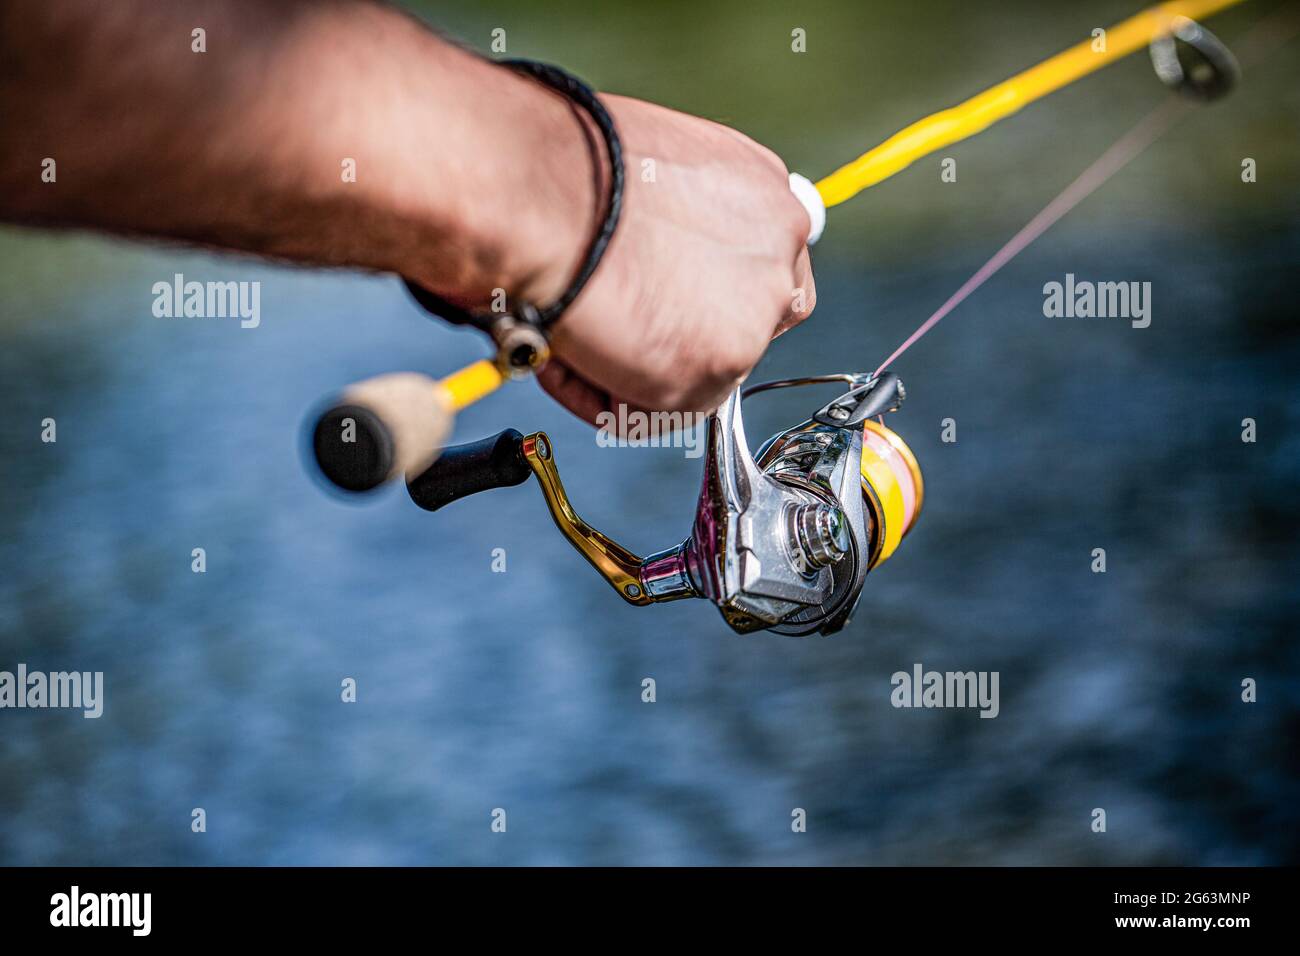 Pescador mano sosteniendo caña de pescar con carrete. Carrete de